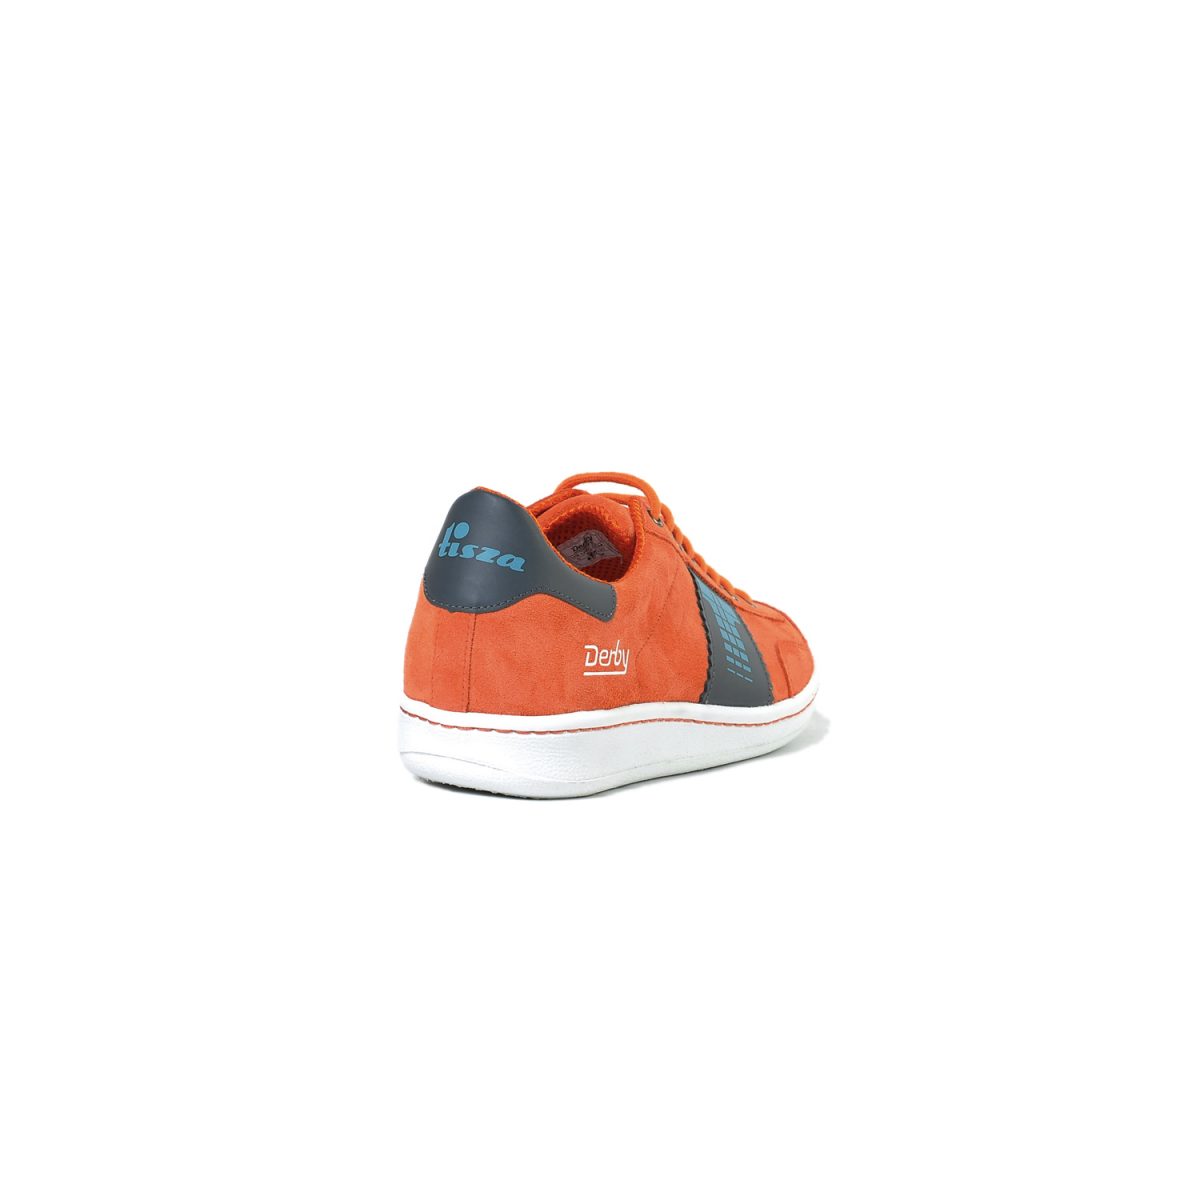 Tisza shoes - Derby - Orange-grey